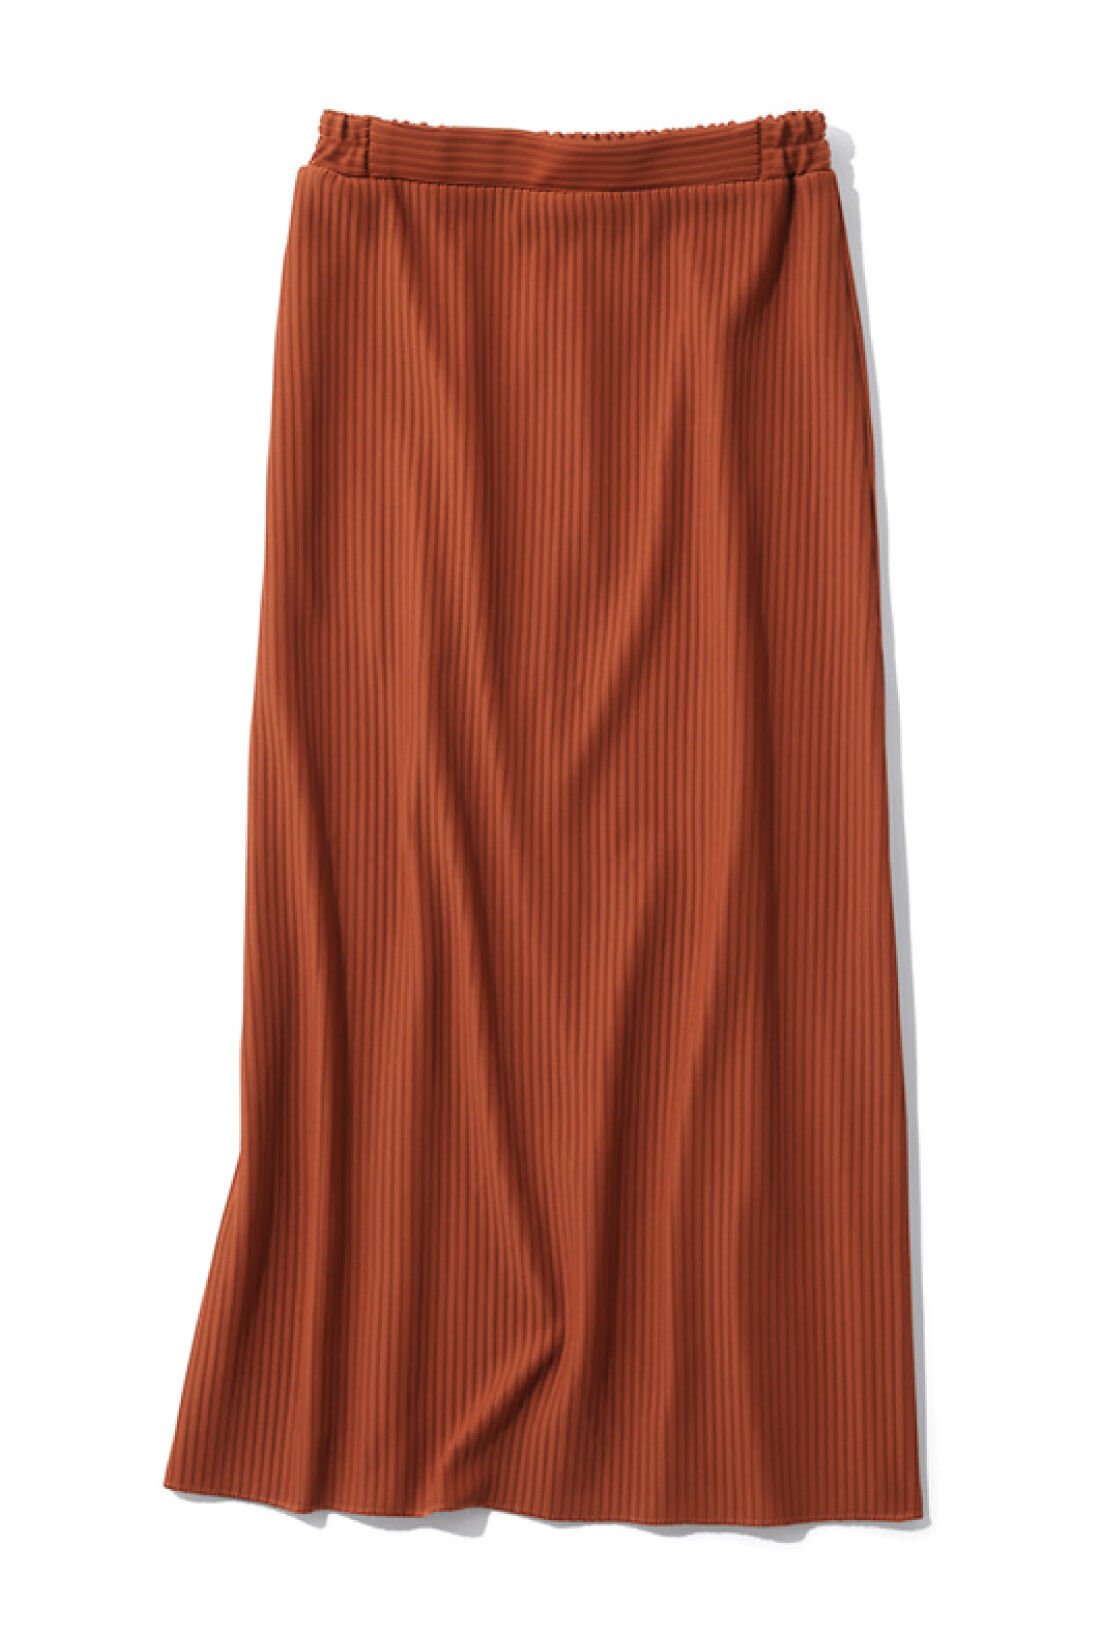 IEDIT[イディット]　ニットライクなリップルカットソー素材で仕立てた らくちんきれいなIラインスカートの会